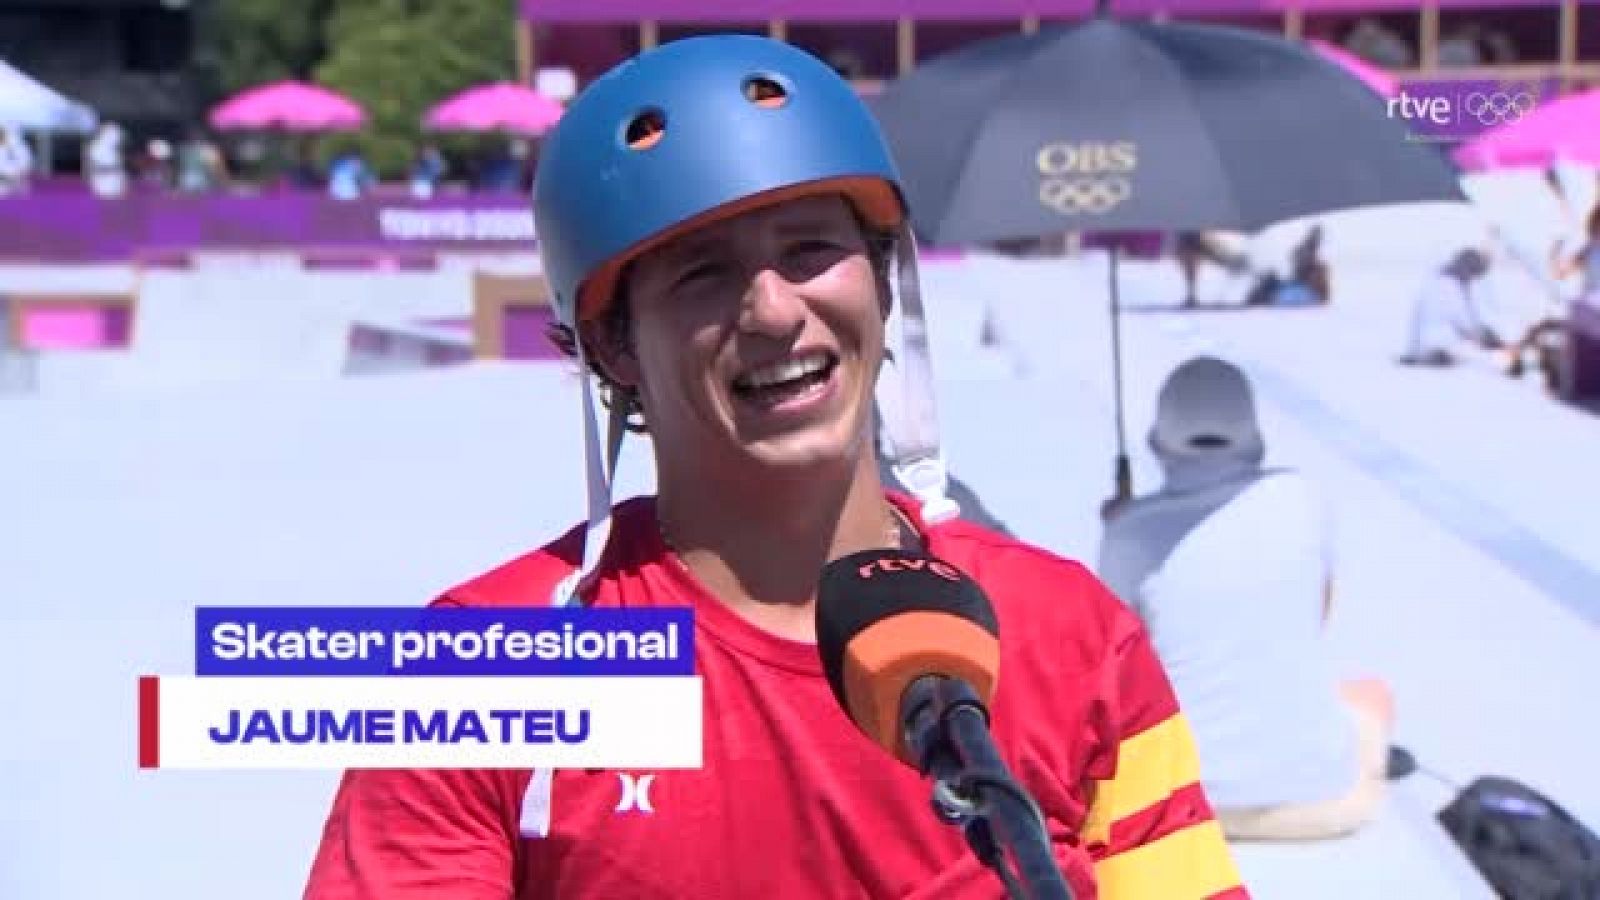 Tokyo 2020 - Jaime Mateu: "El skate es mucho más que un deporte, es un estilo de vida"